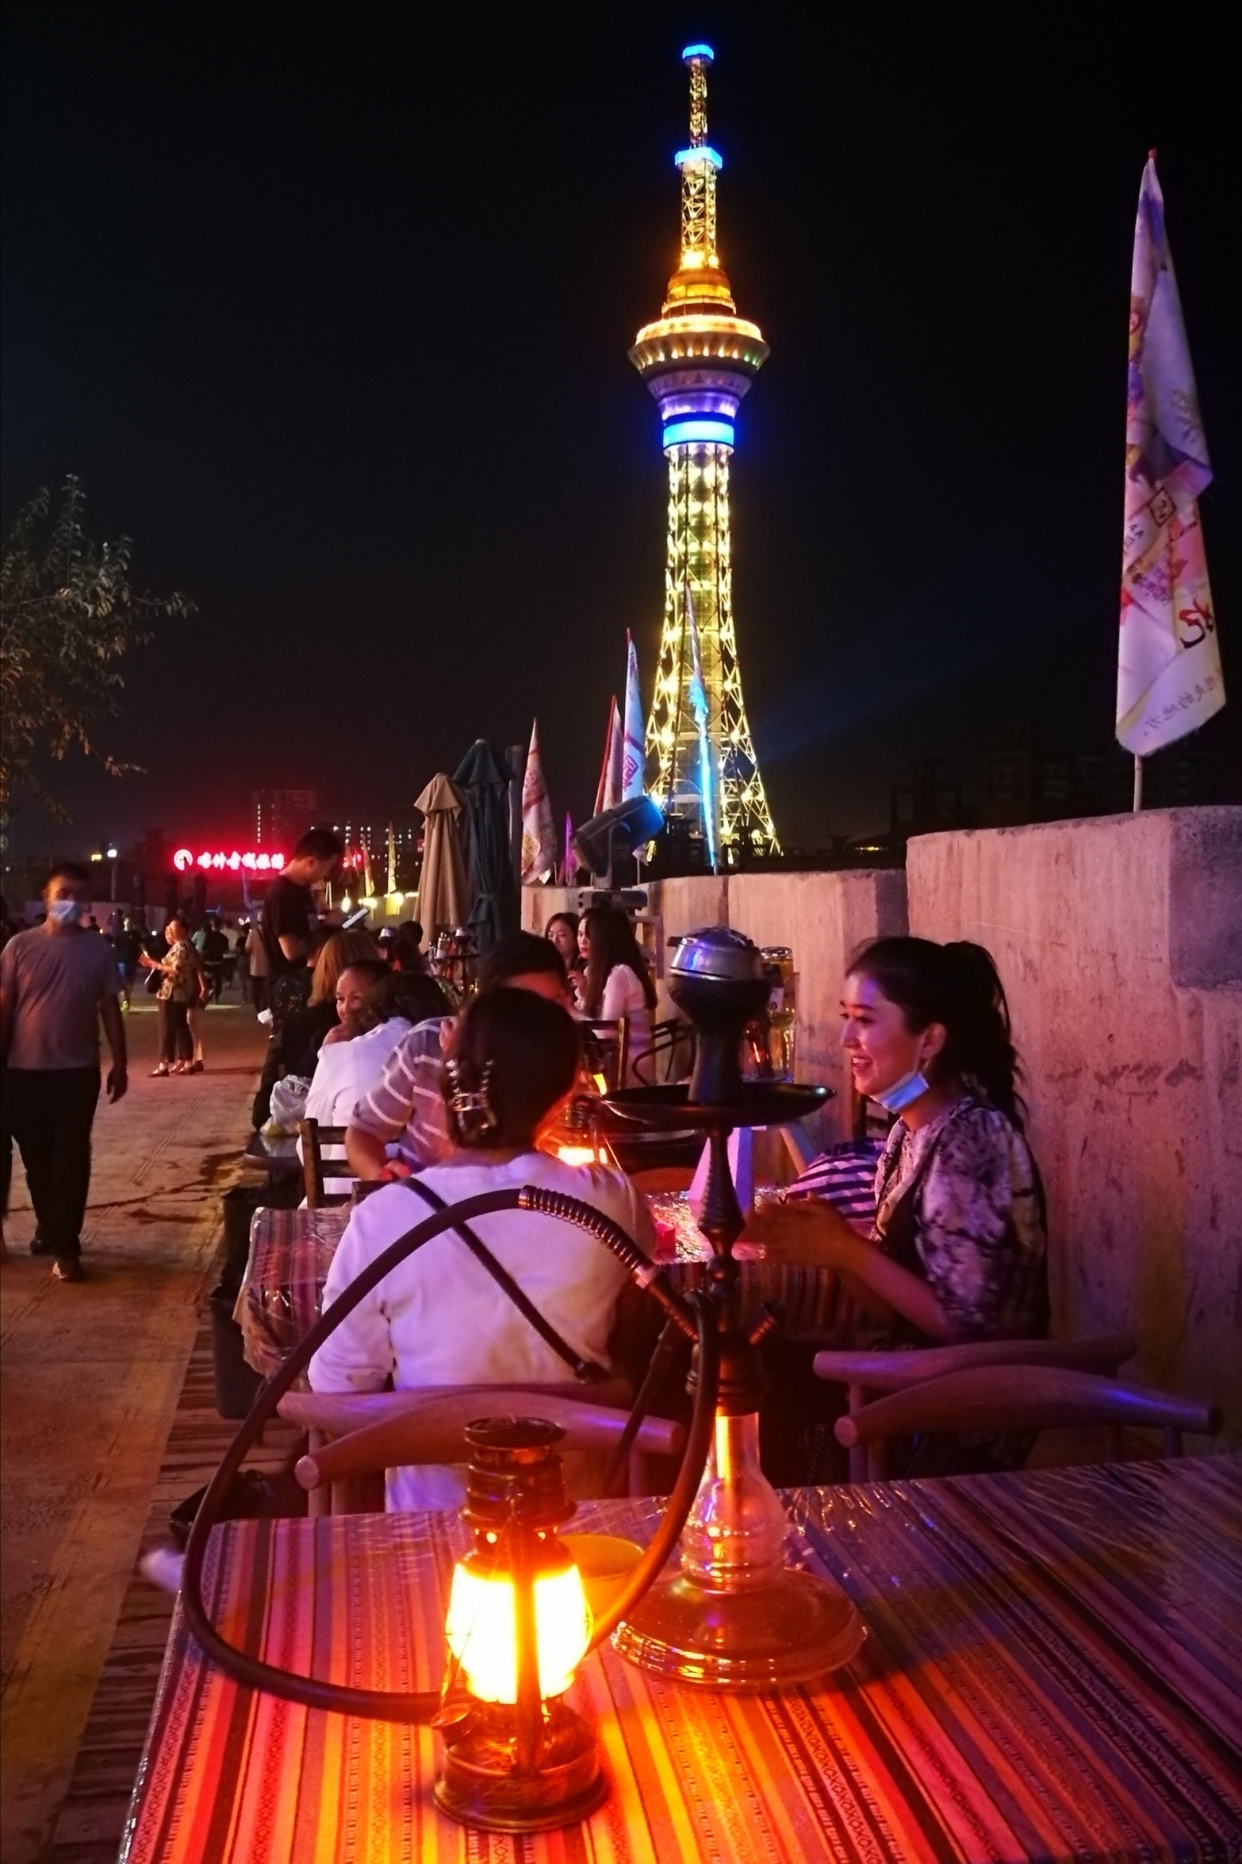 喀什老城夜景图片